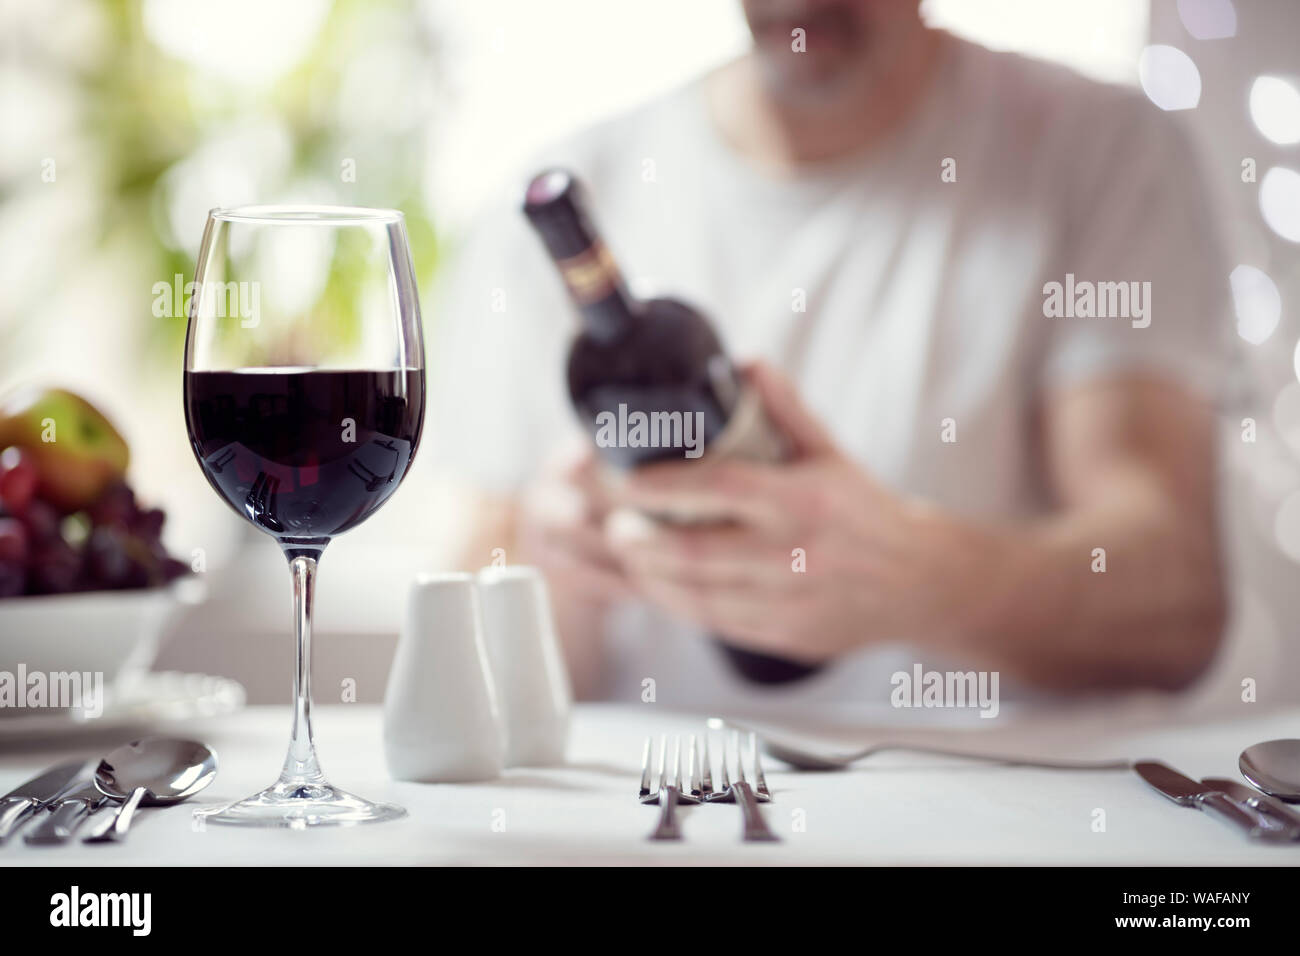 Mann lesen Rotwein Etikett im Restaurant Focus auf Glas Stockfoto